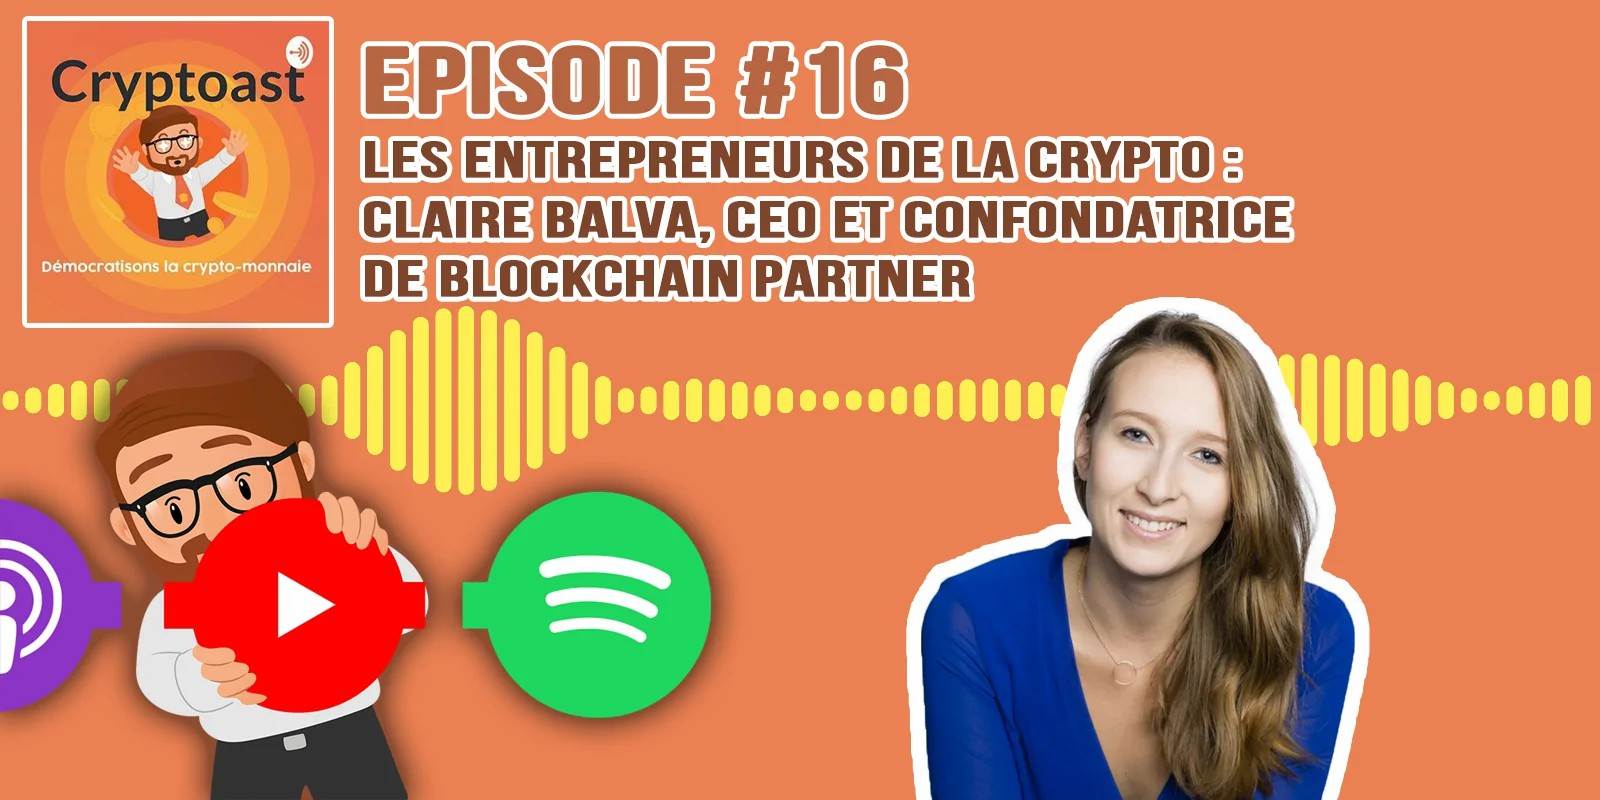 Podcast #16 - Crypto-entrepreneurs : Claire Balva, CEO de Blockchain Partner